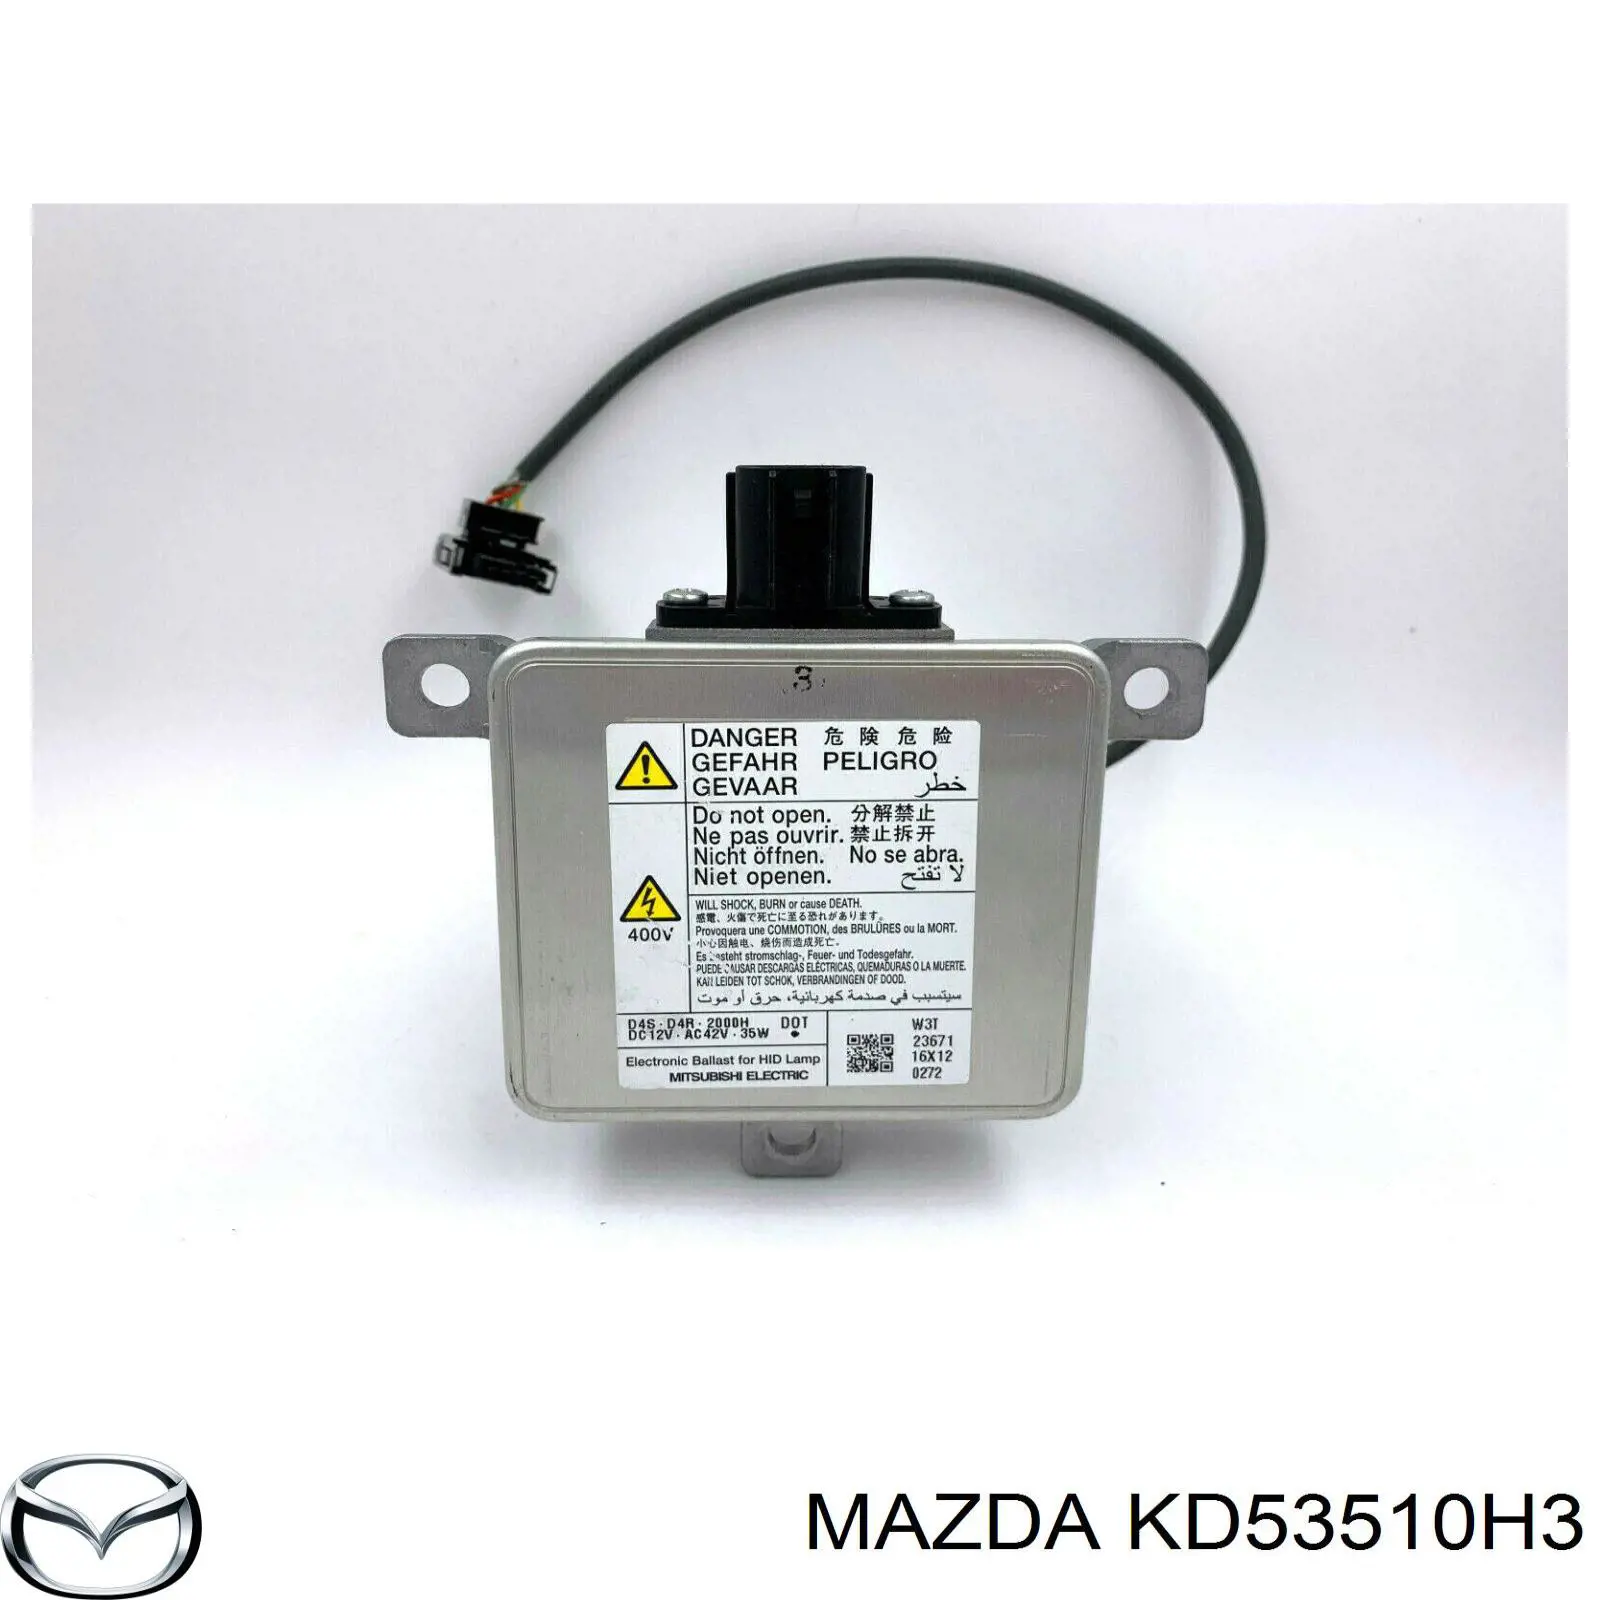 KD53510H3 Mazda bobina de reactancia, lámpara de descarga de gas